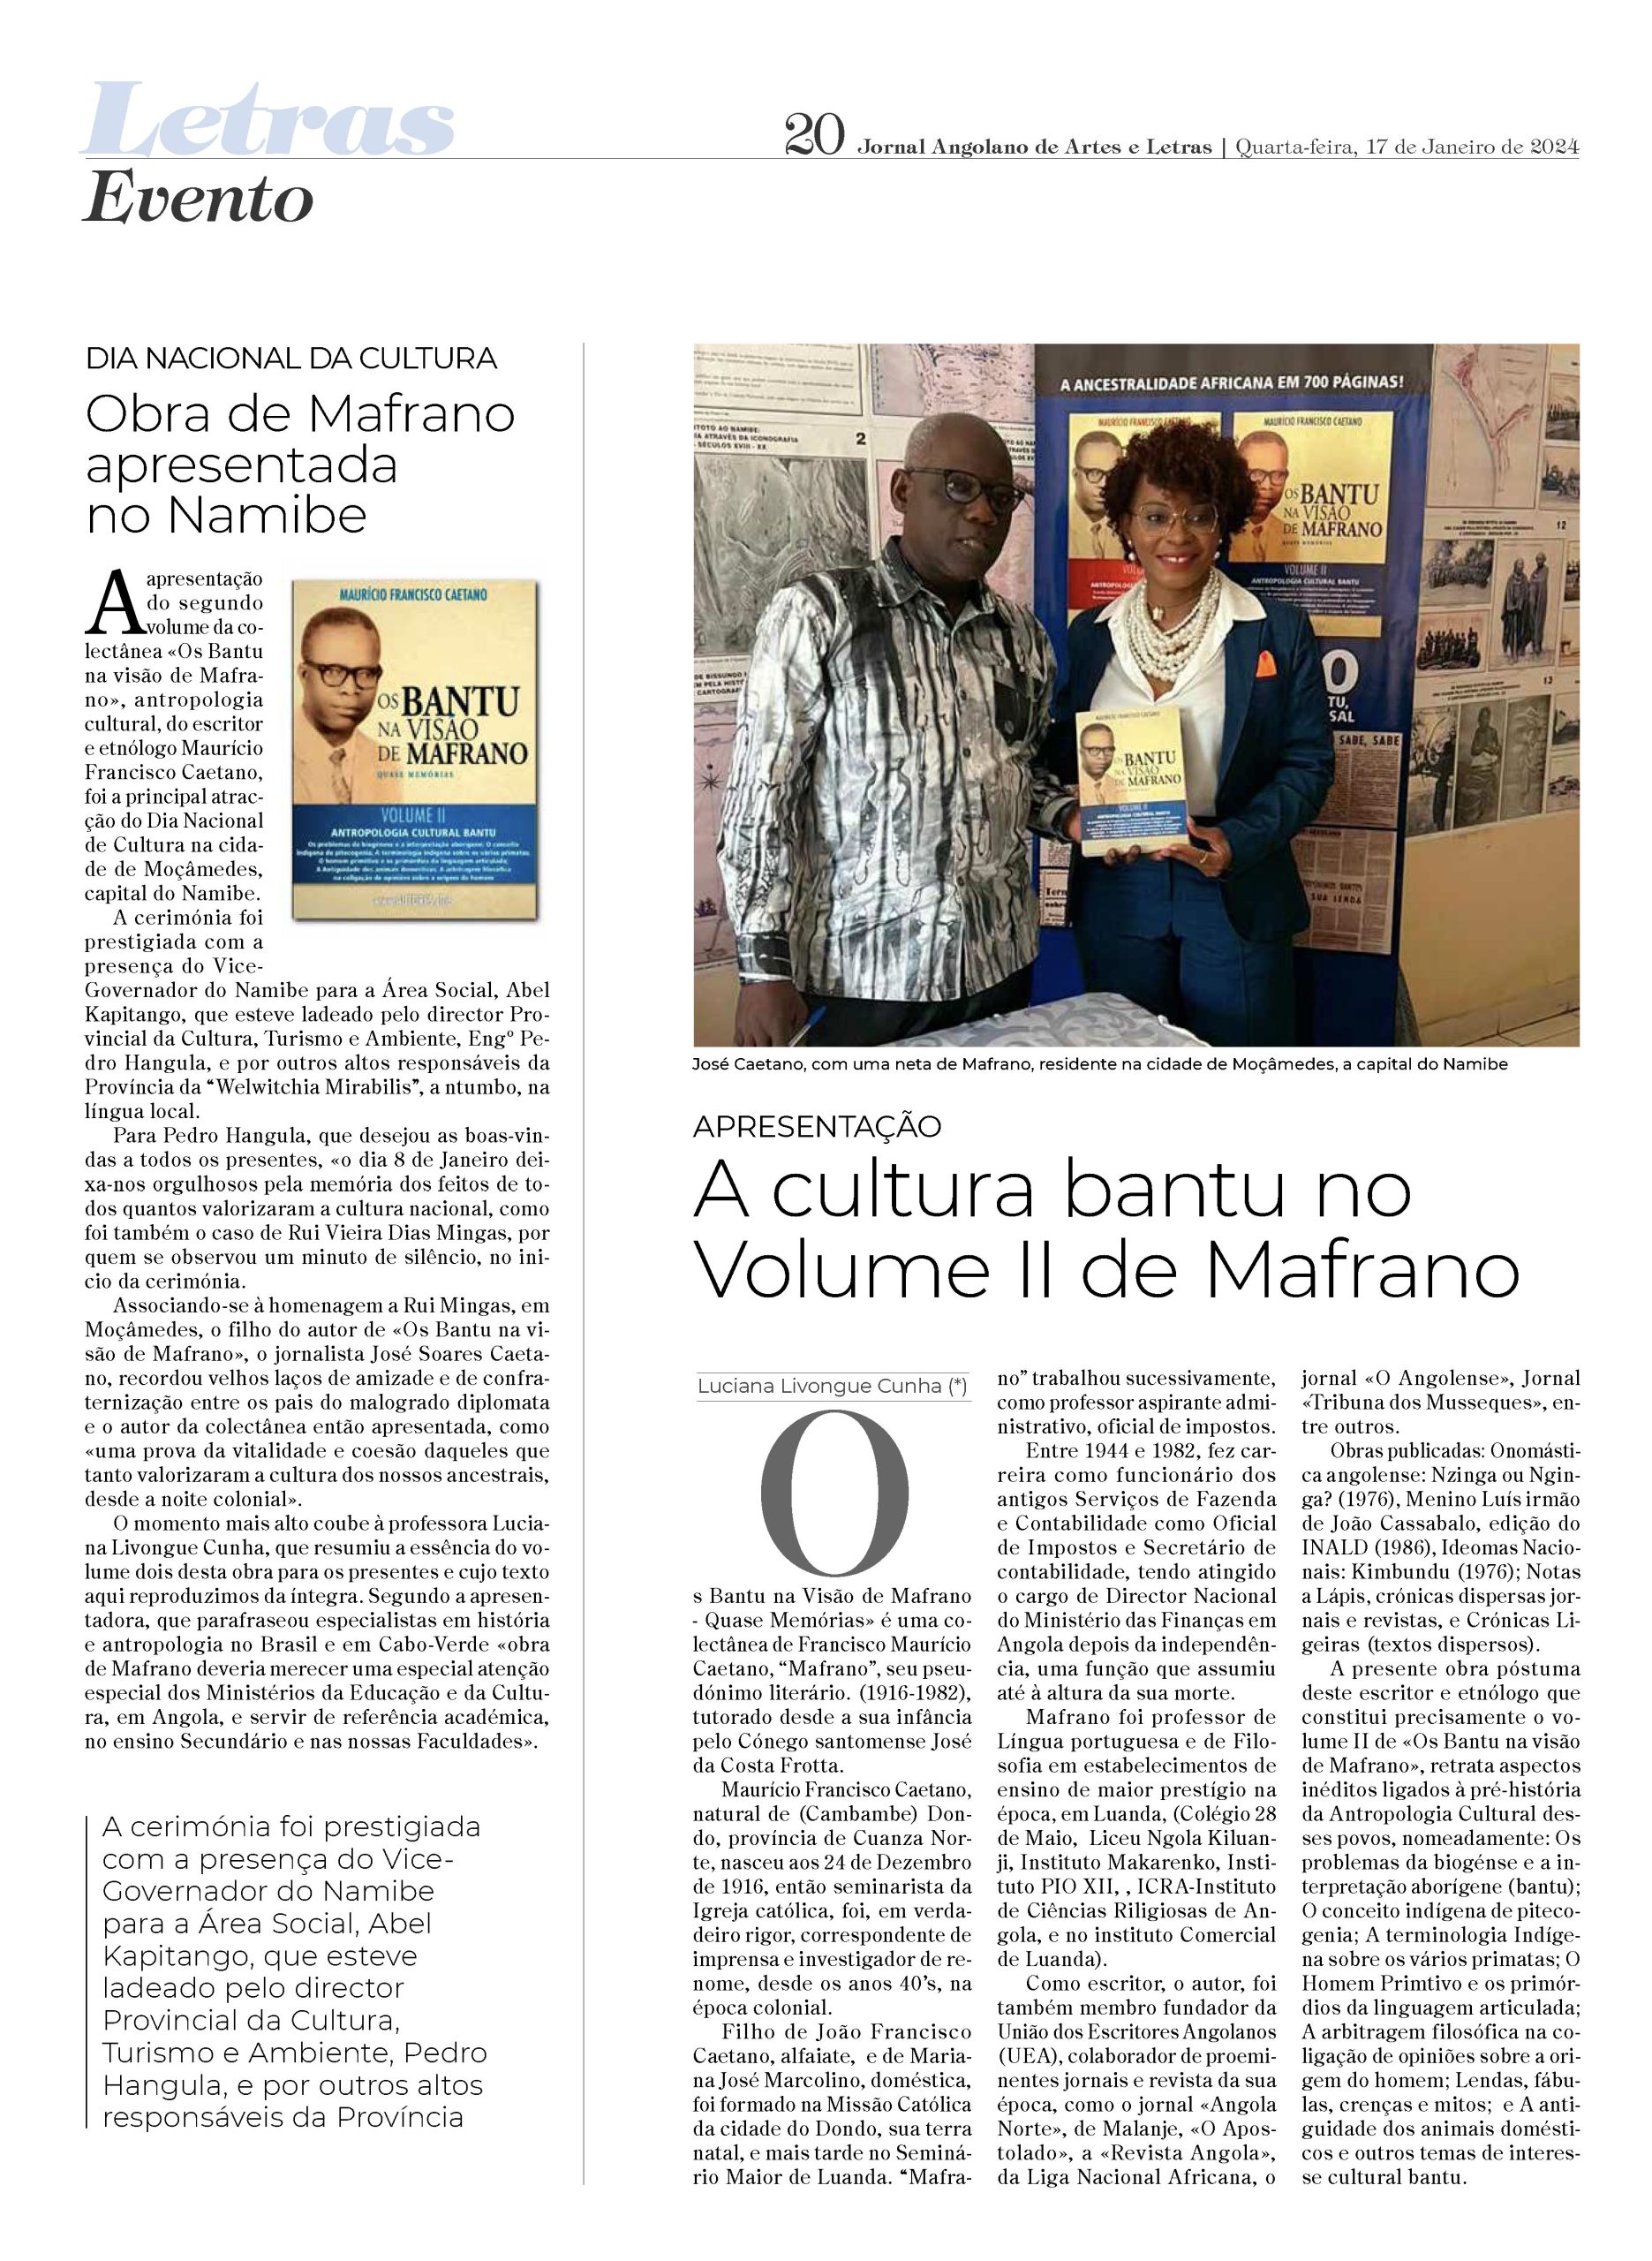 Jornal Cultura: “Obra de Mafrano compara lendas ocidentais e lendas africanas”